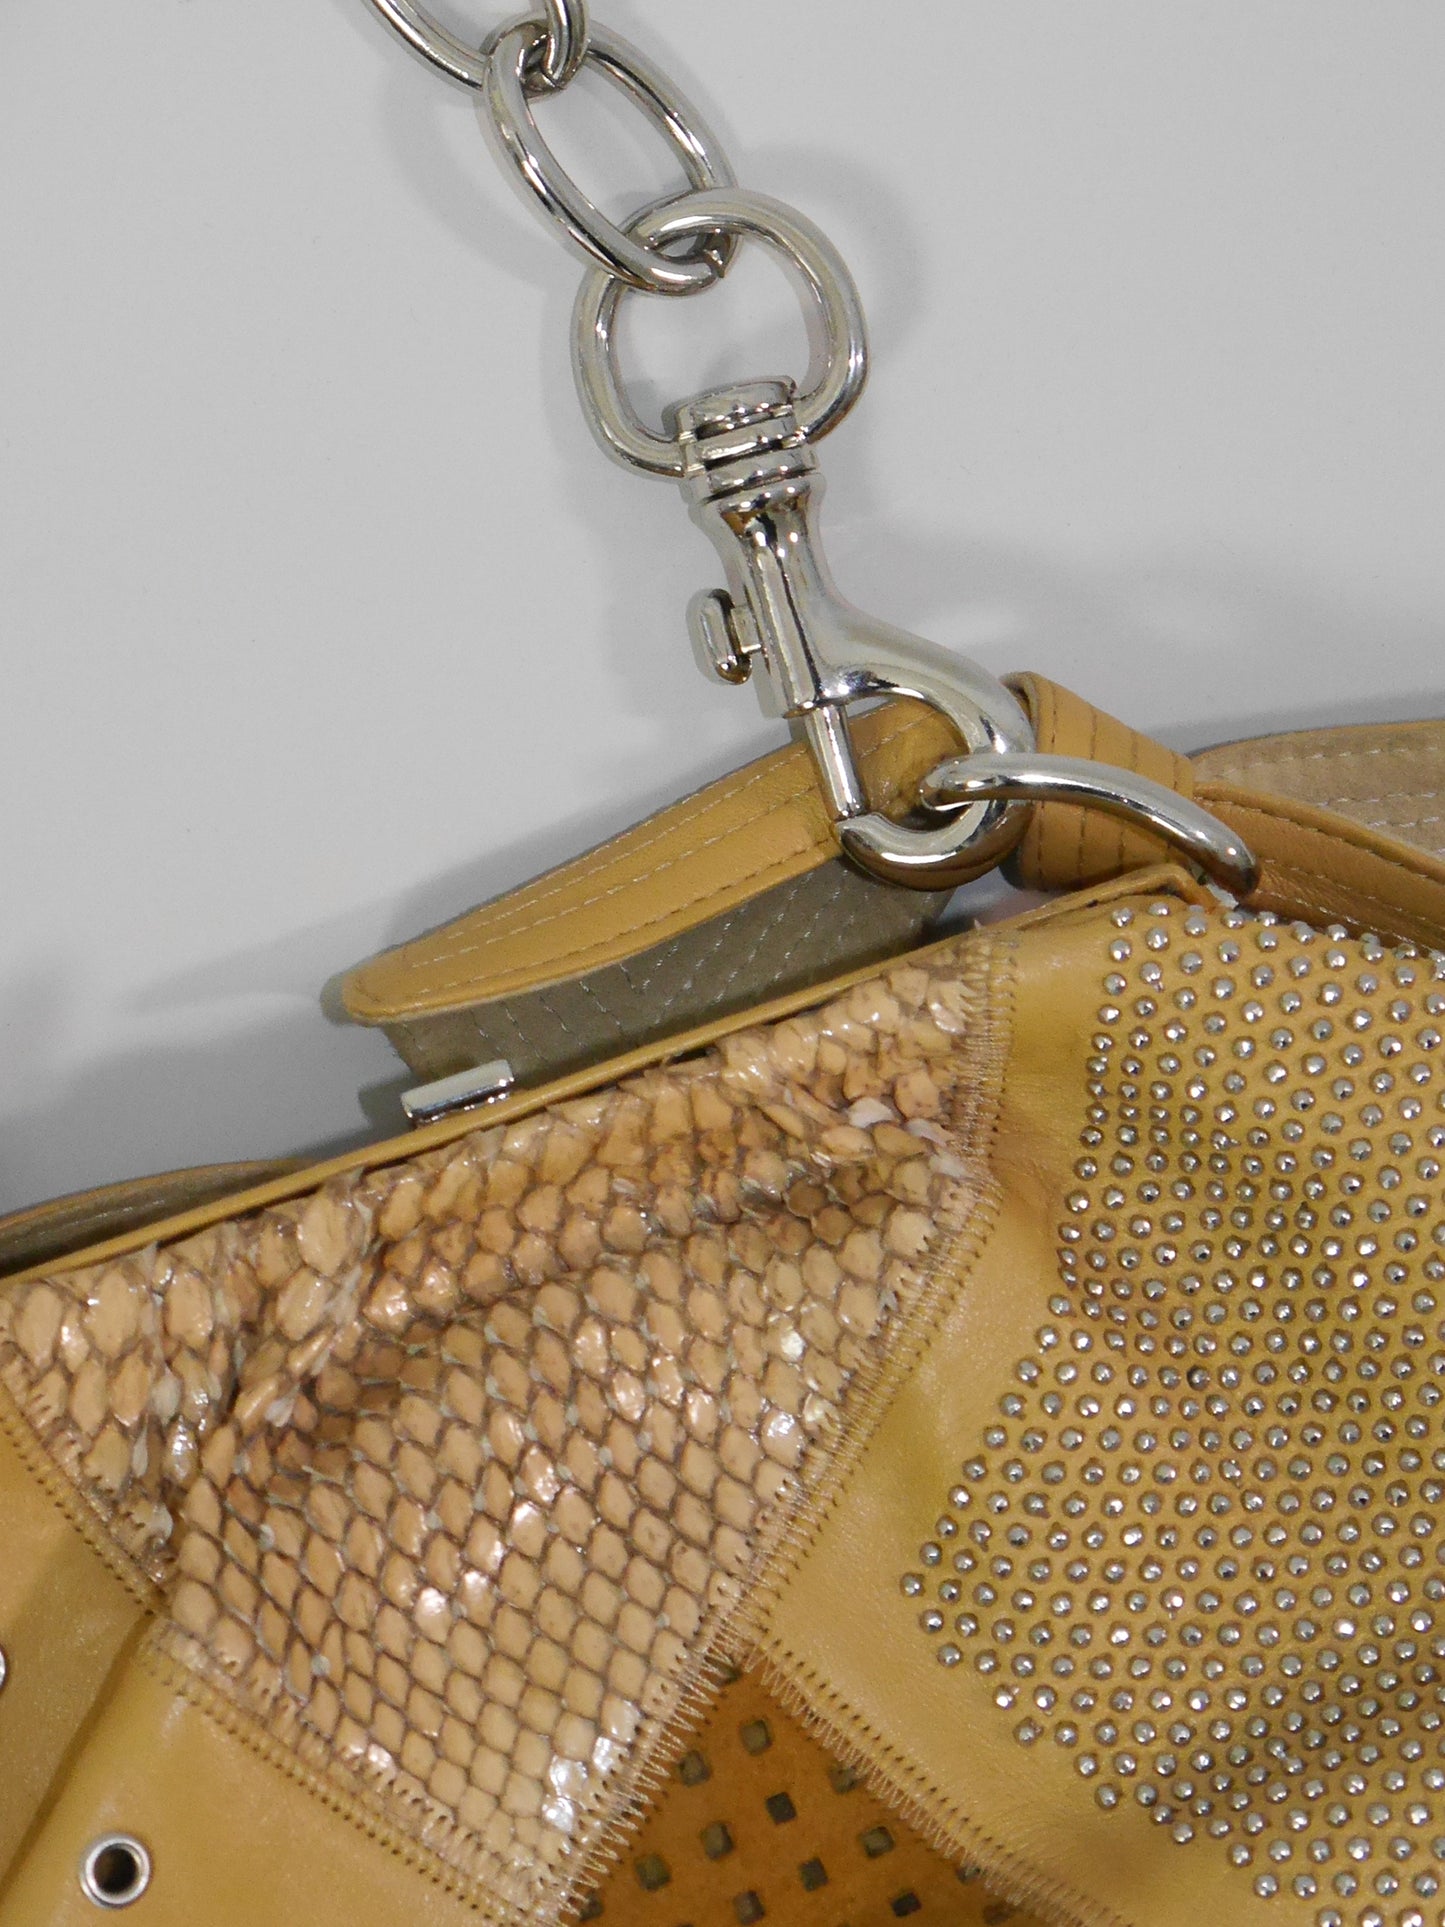 GIANNI VERSACE Spring 2003 Vintage Y2K Statement Handbag Studded Leather & Snakeskin